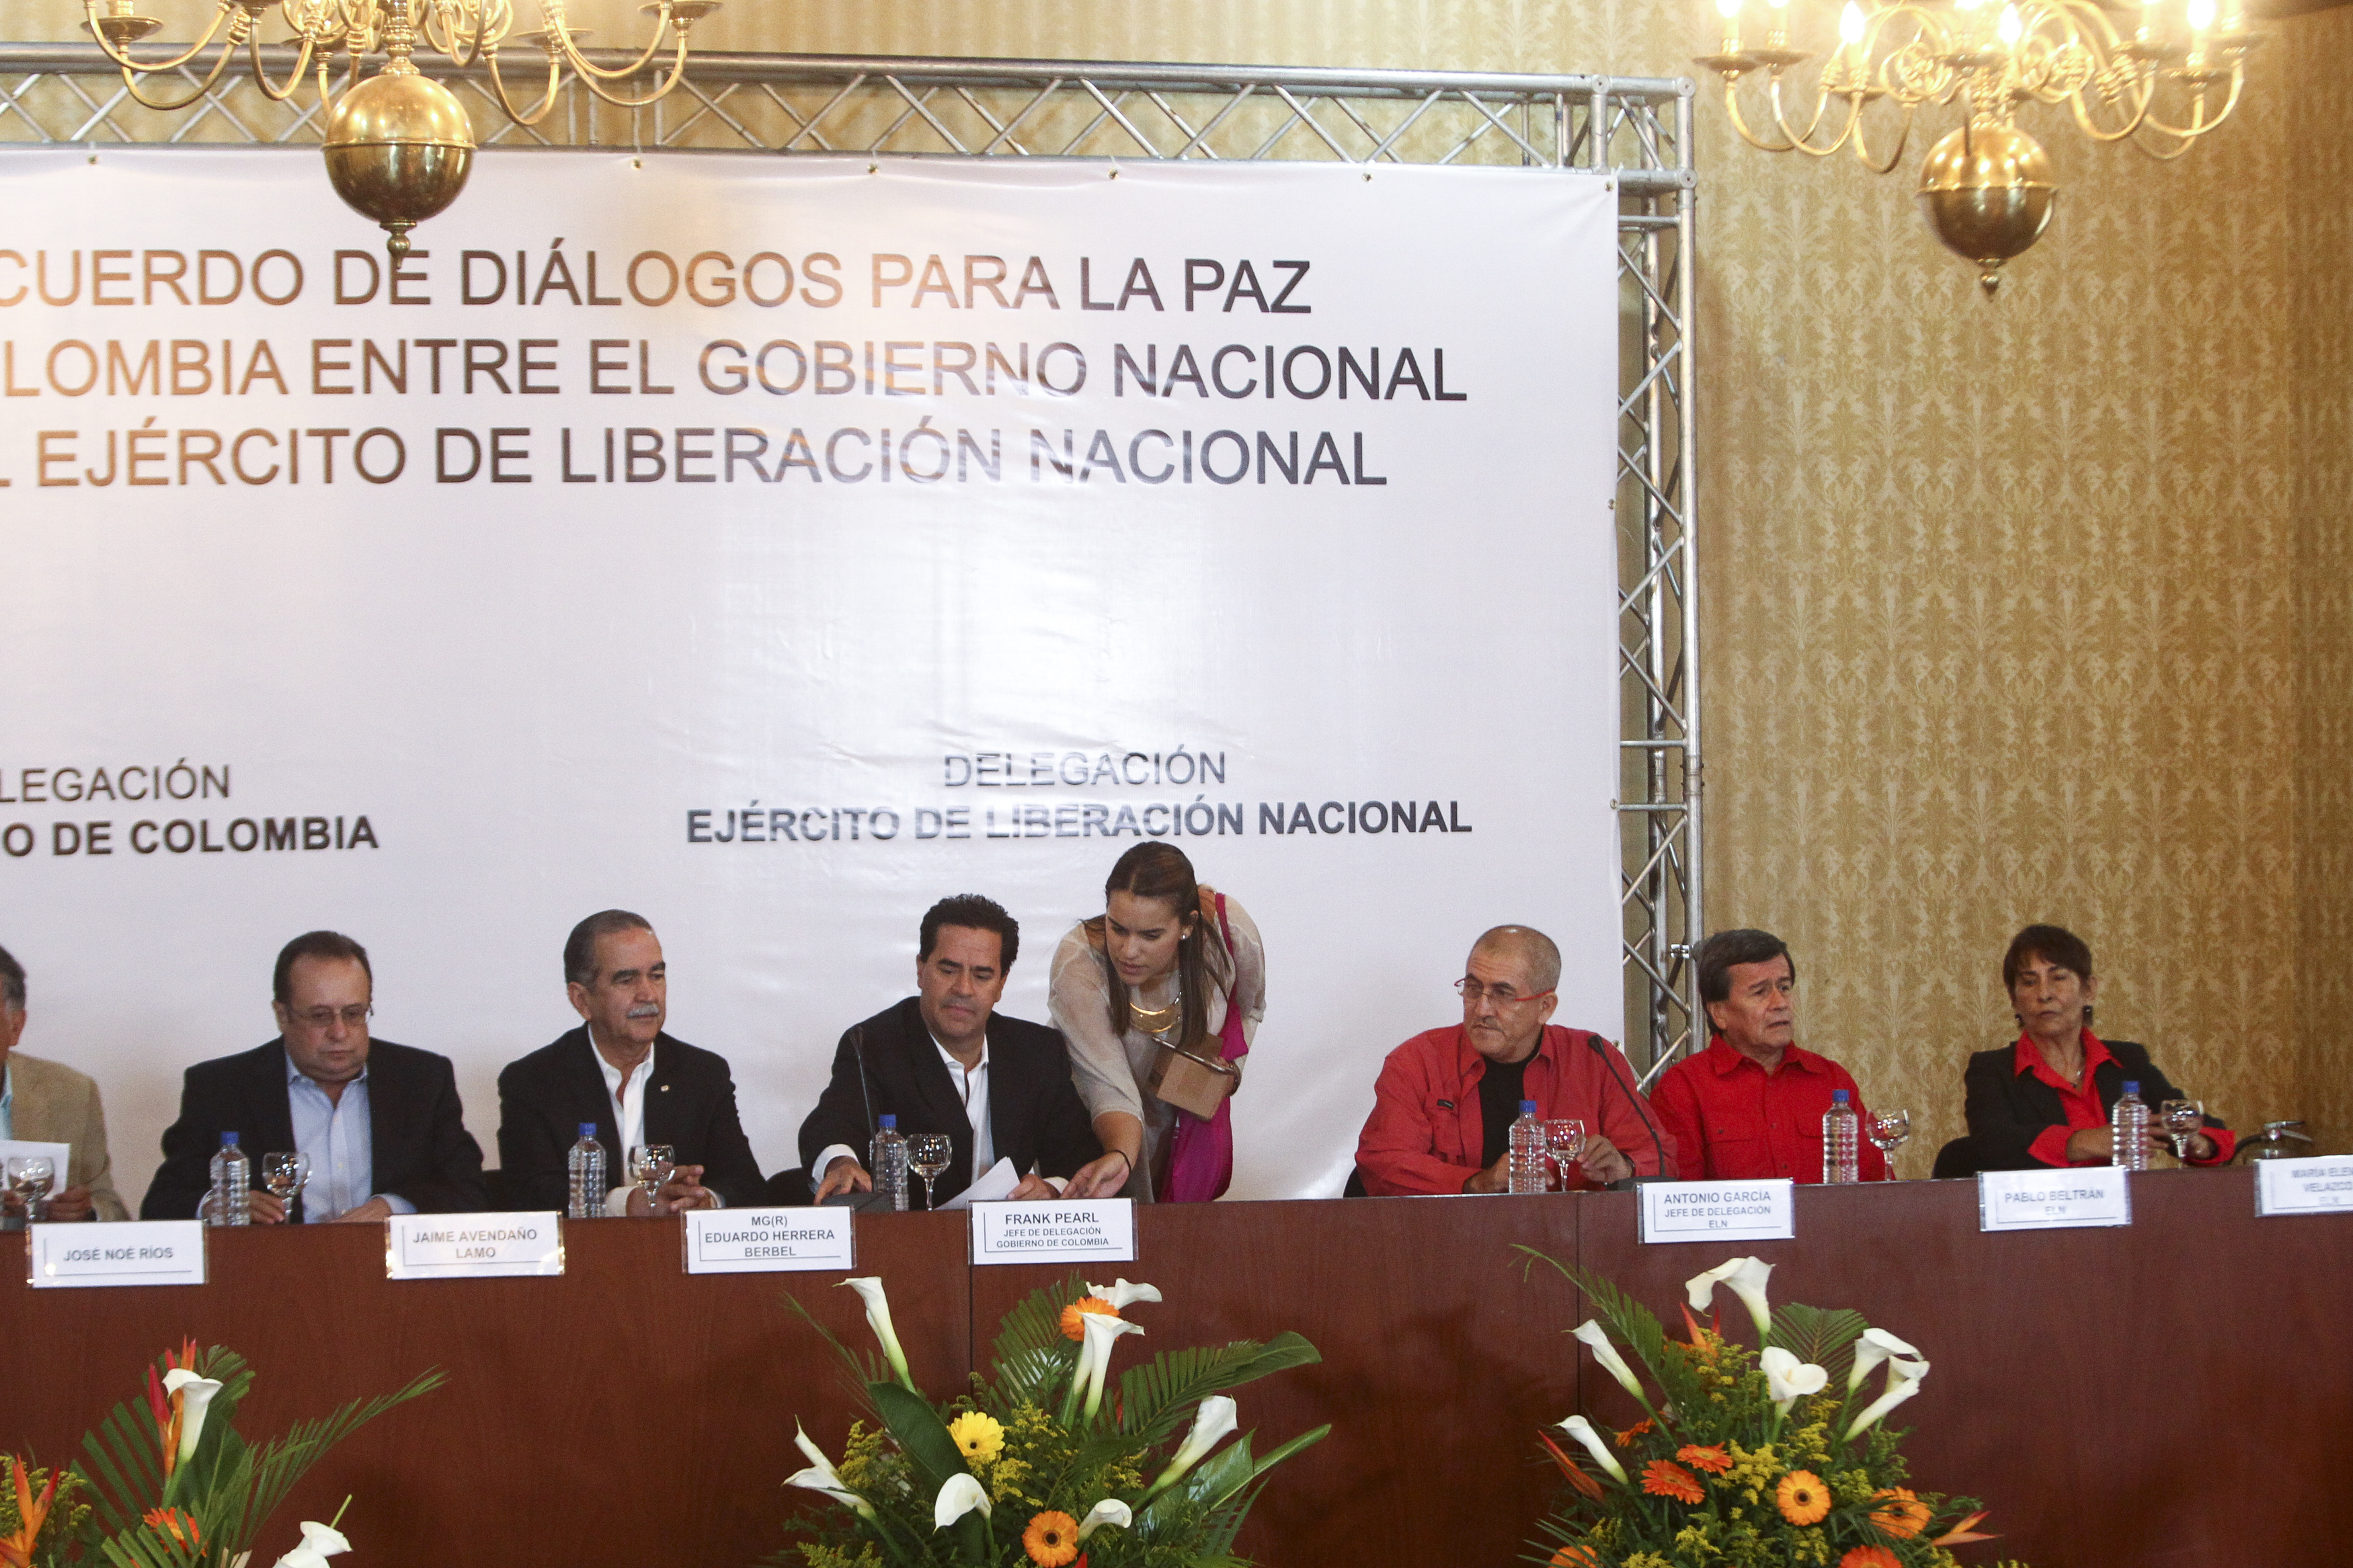 Las delegaciones están encabezadas por Juan Camilo Restrepo, por el Gobierno de Colombia, y Pablo Beltrán, por el ELN.